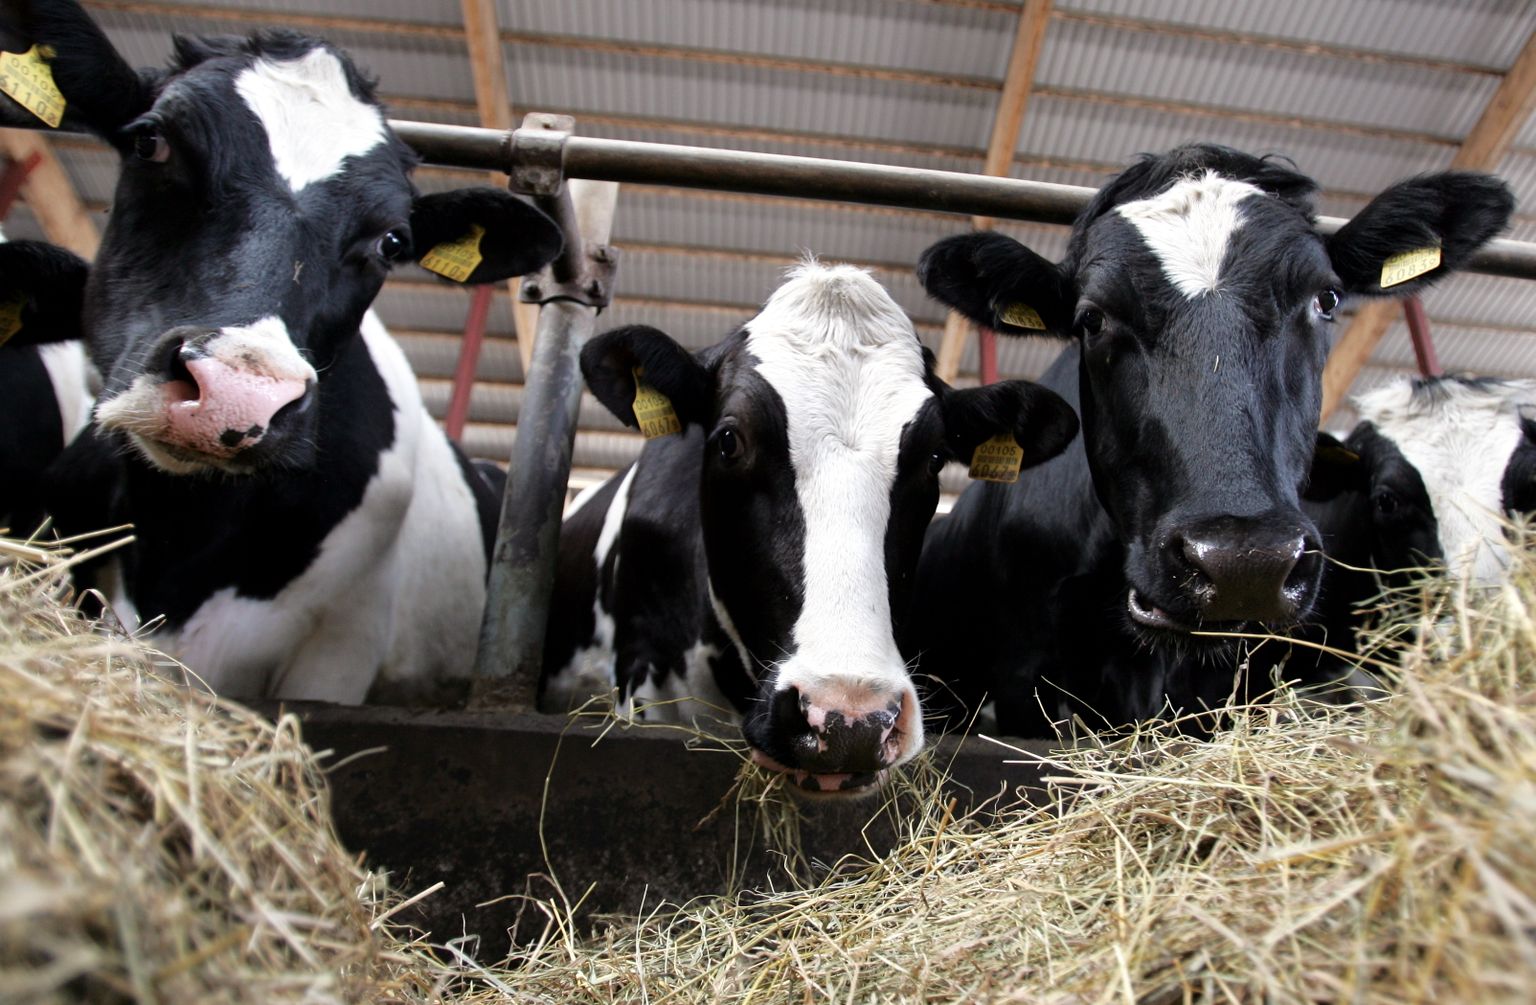 Eesti Põllumajandus-Kaubanduskoja andmetel on juba kuid kestnud keerulise olukorra tõttu  mitmed piimakarjad pandud müüki, et leida neile uued omanikud.